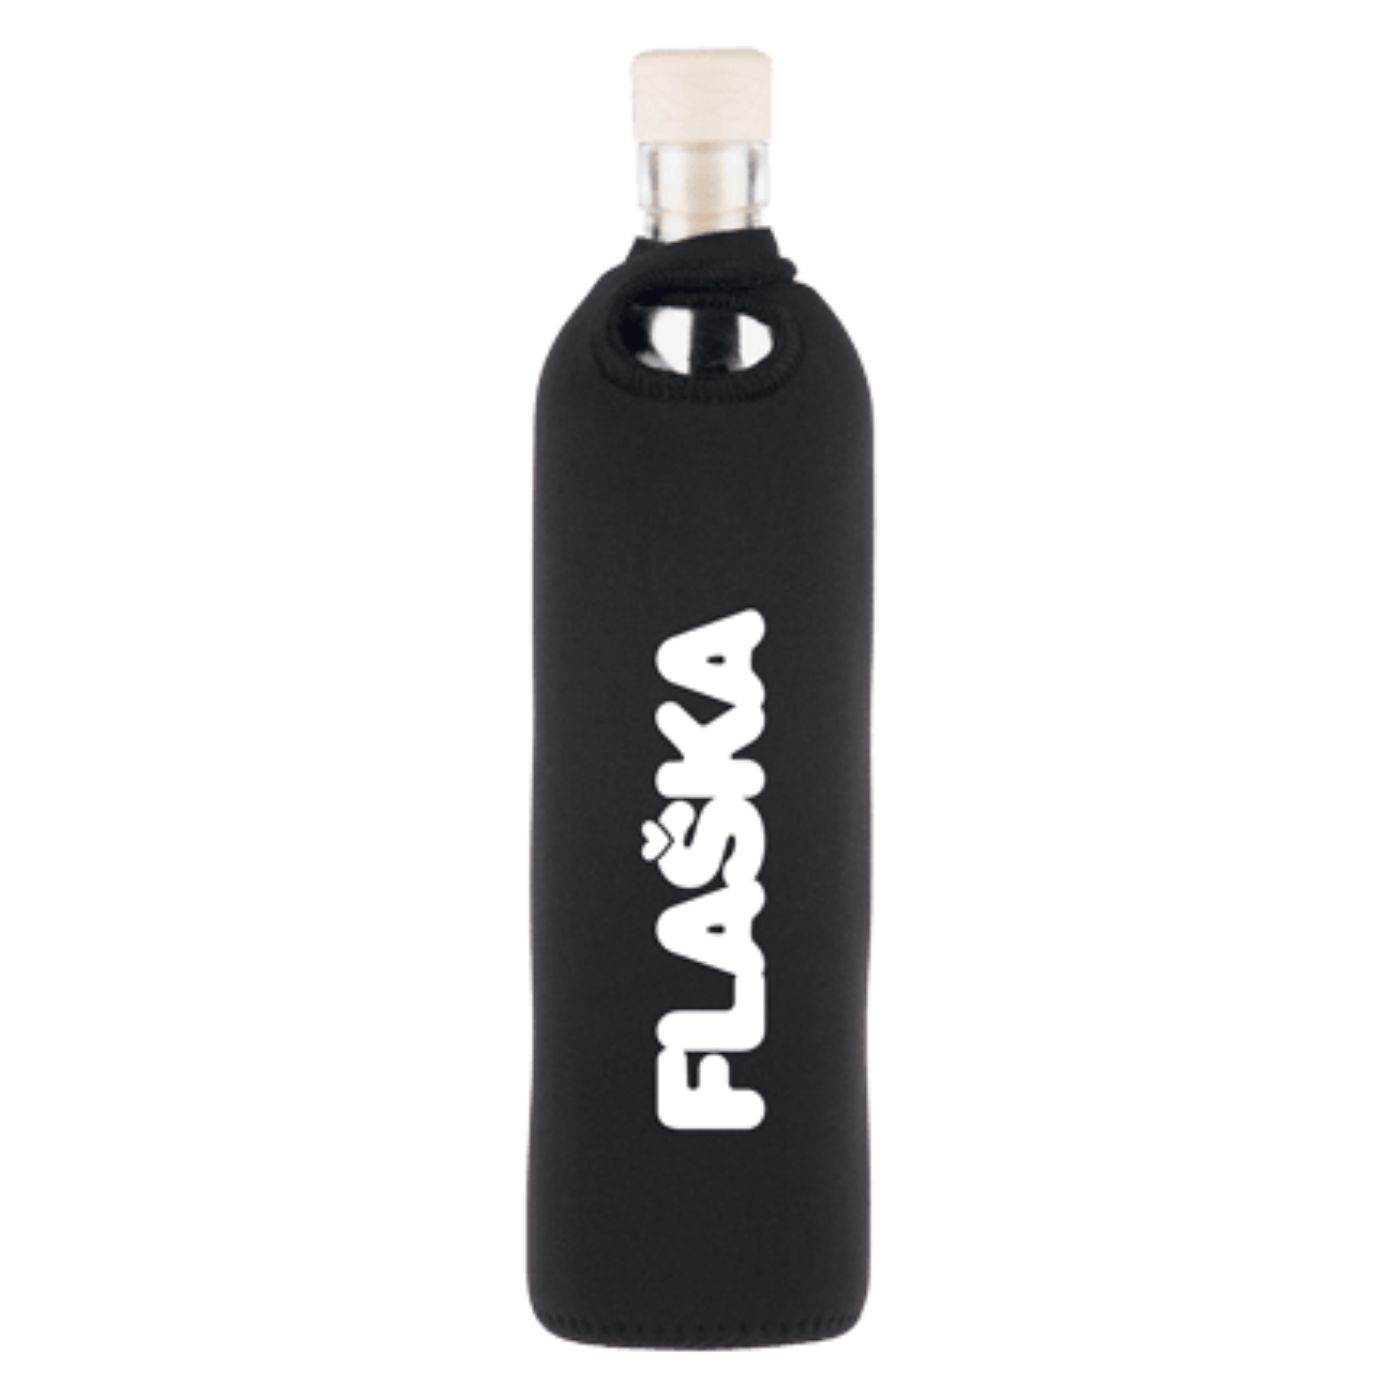 wiederverwendbare flaska glasflasche mit schwarzer neopren schutzhülle und flaska-logo design